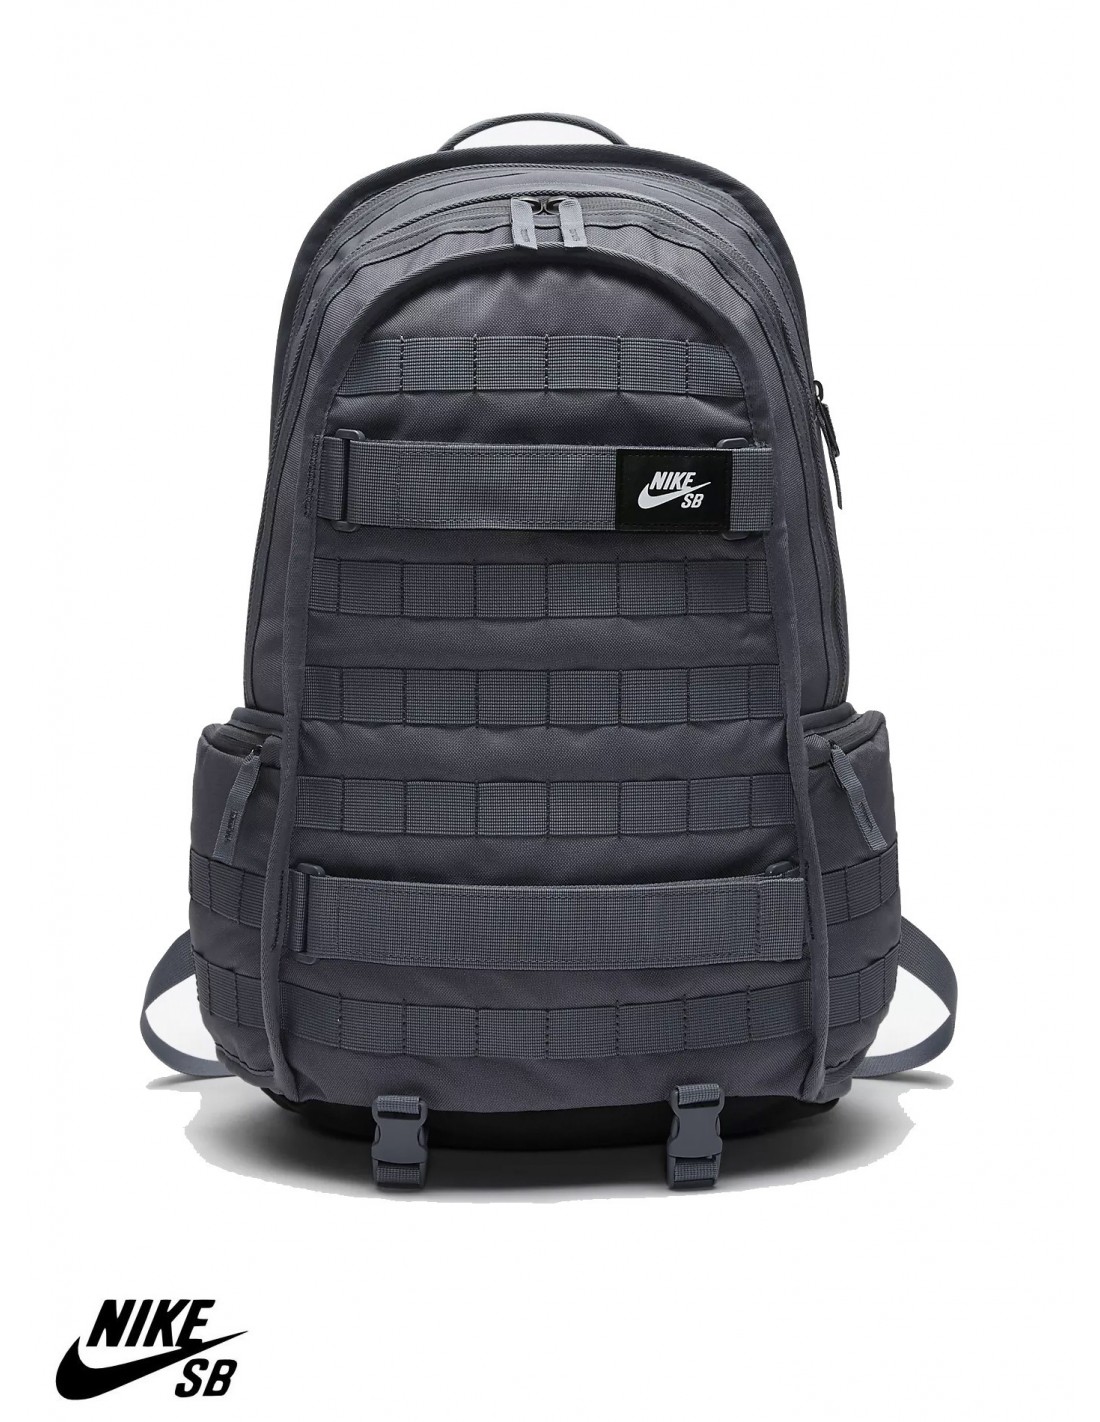 nike sb rpm backpack grey